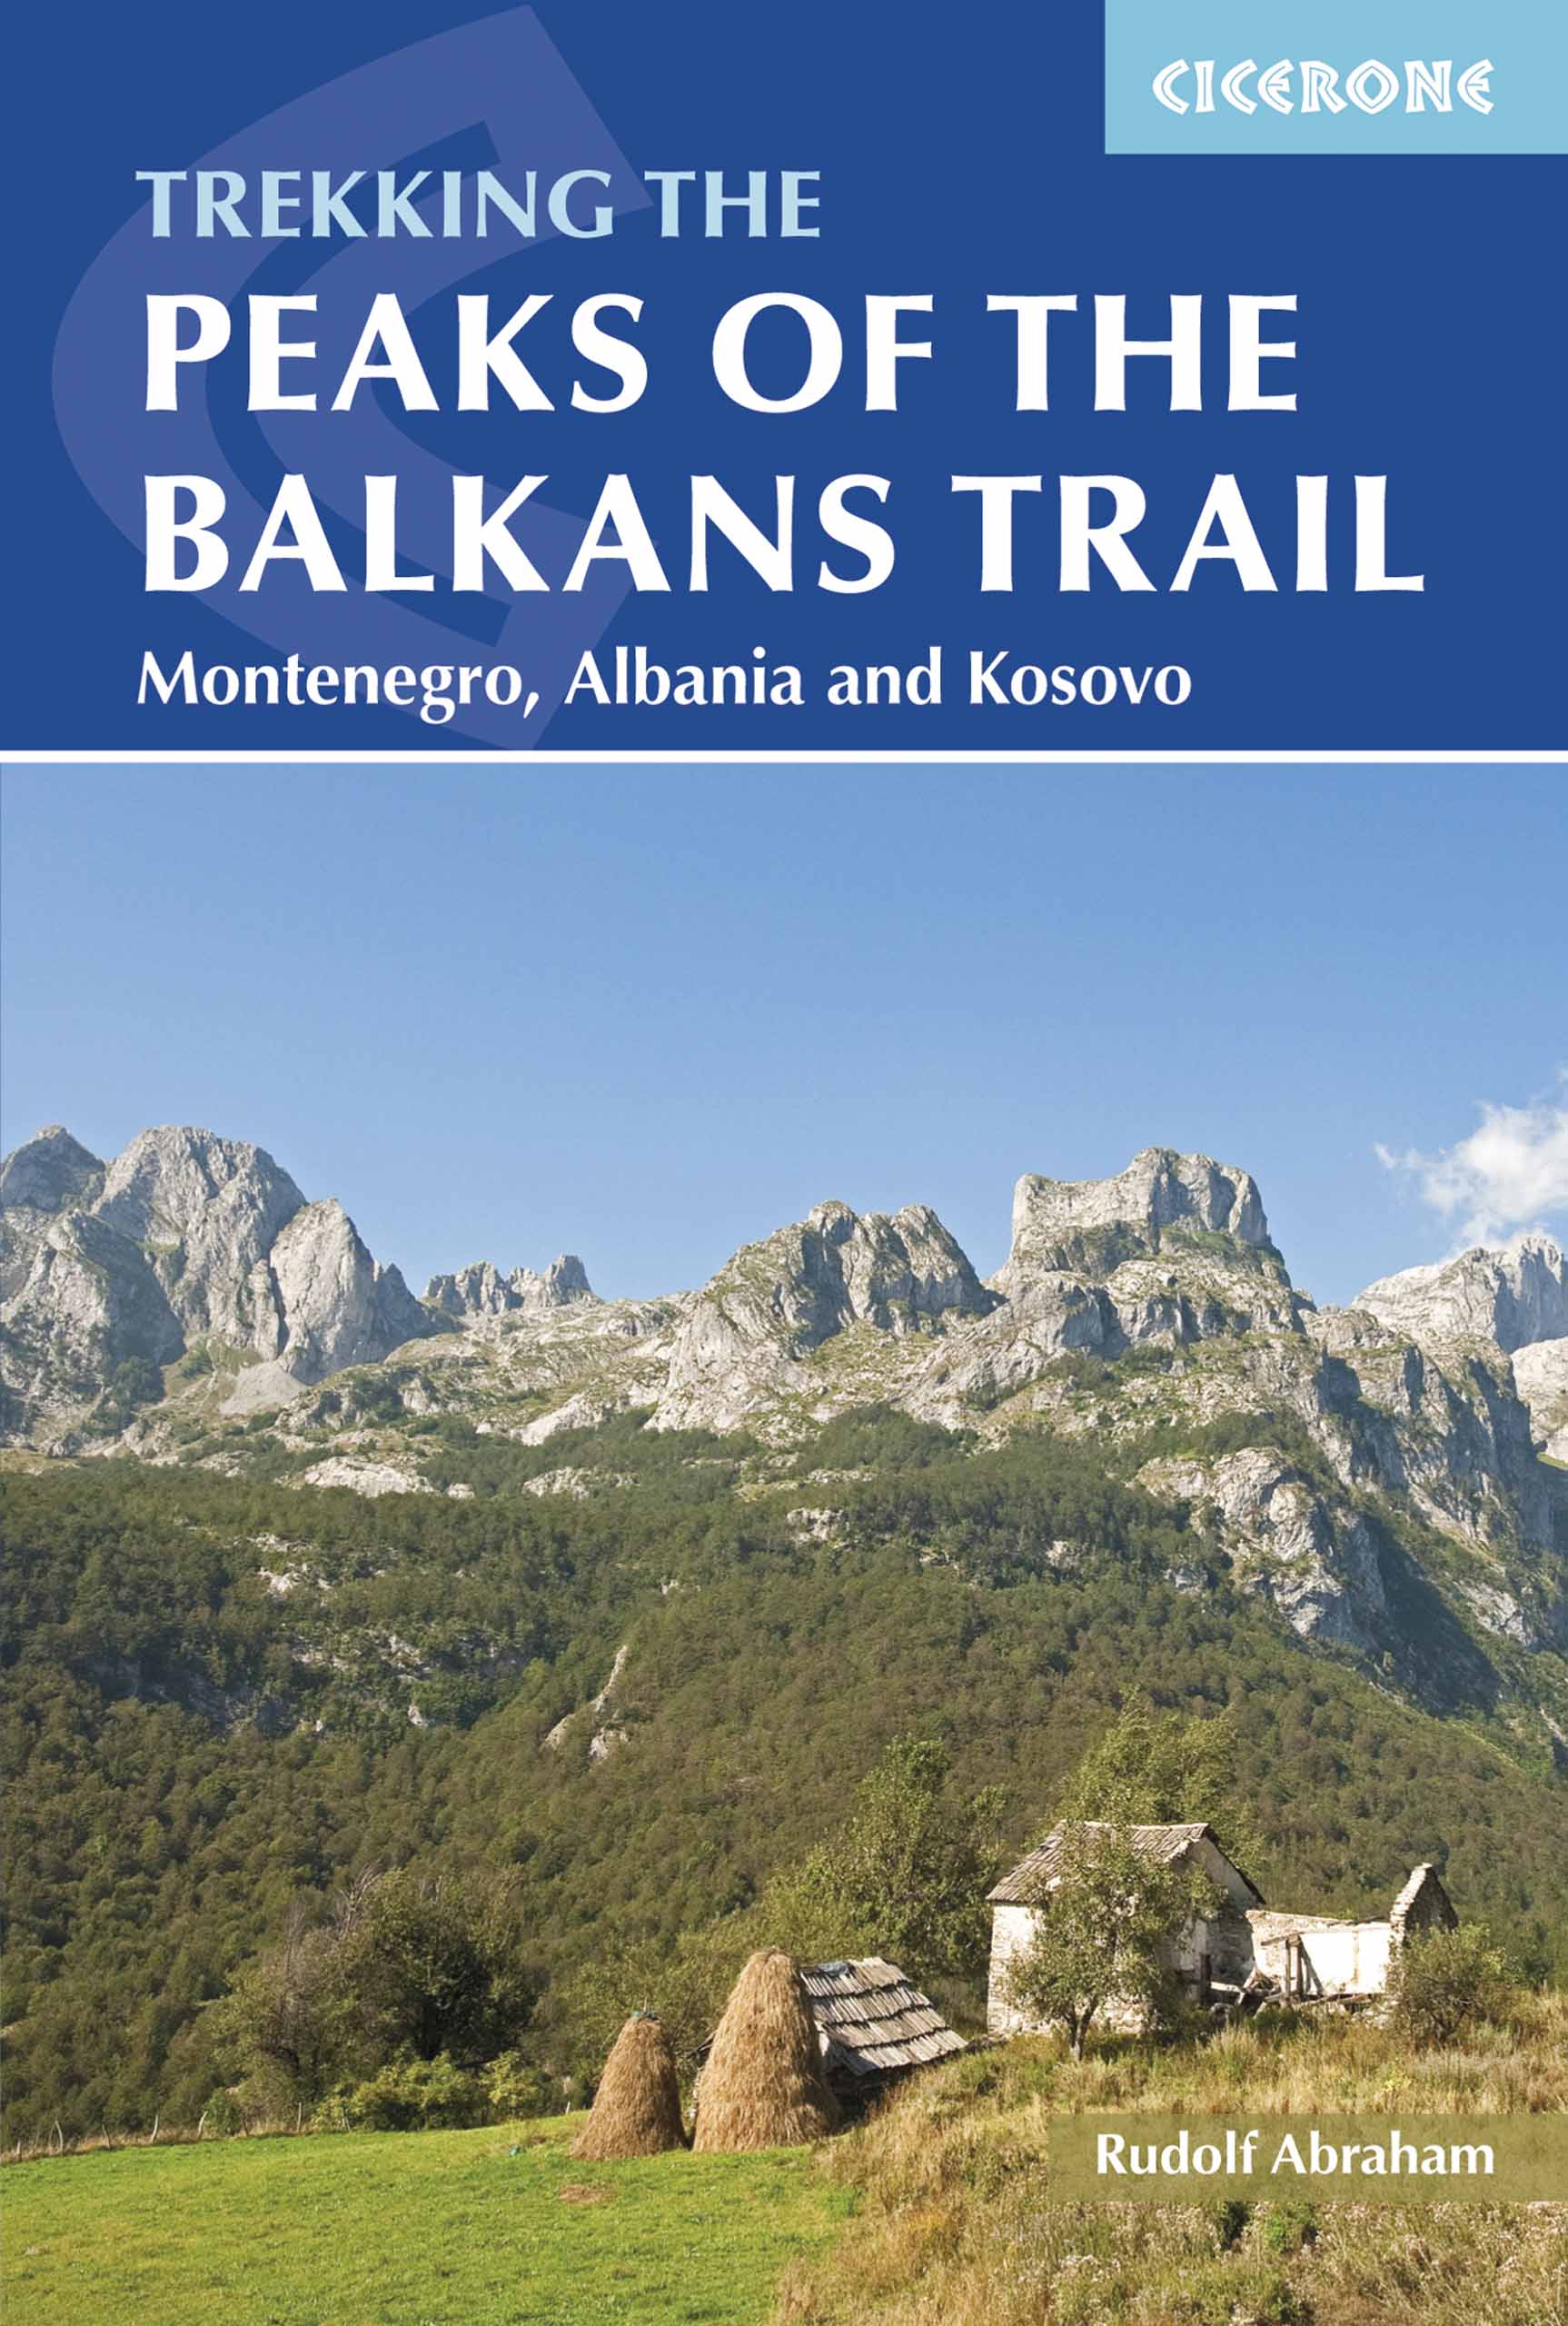 Peaks of the Balkans Trail / Montenegro,Albania & Kosovo